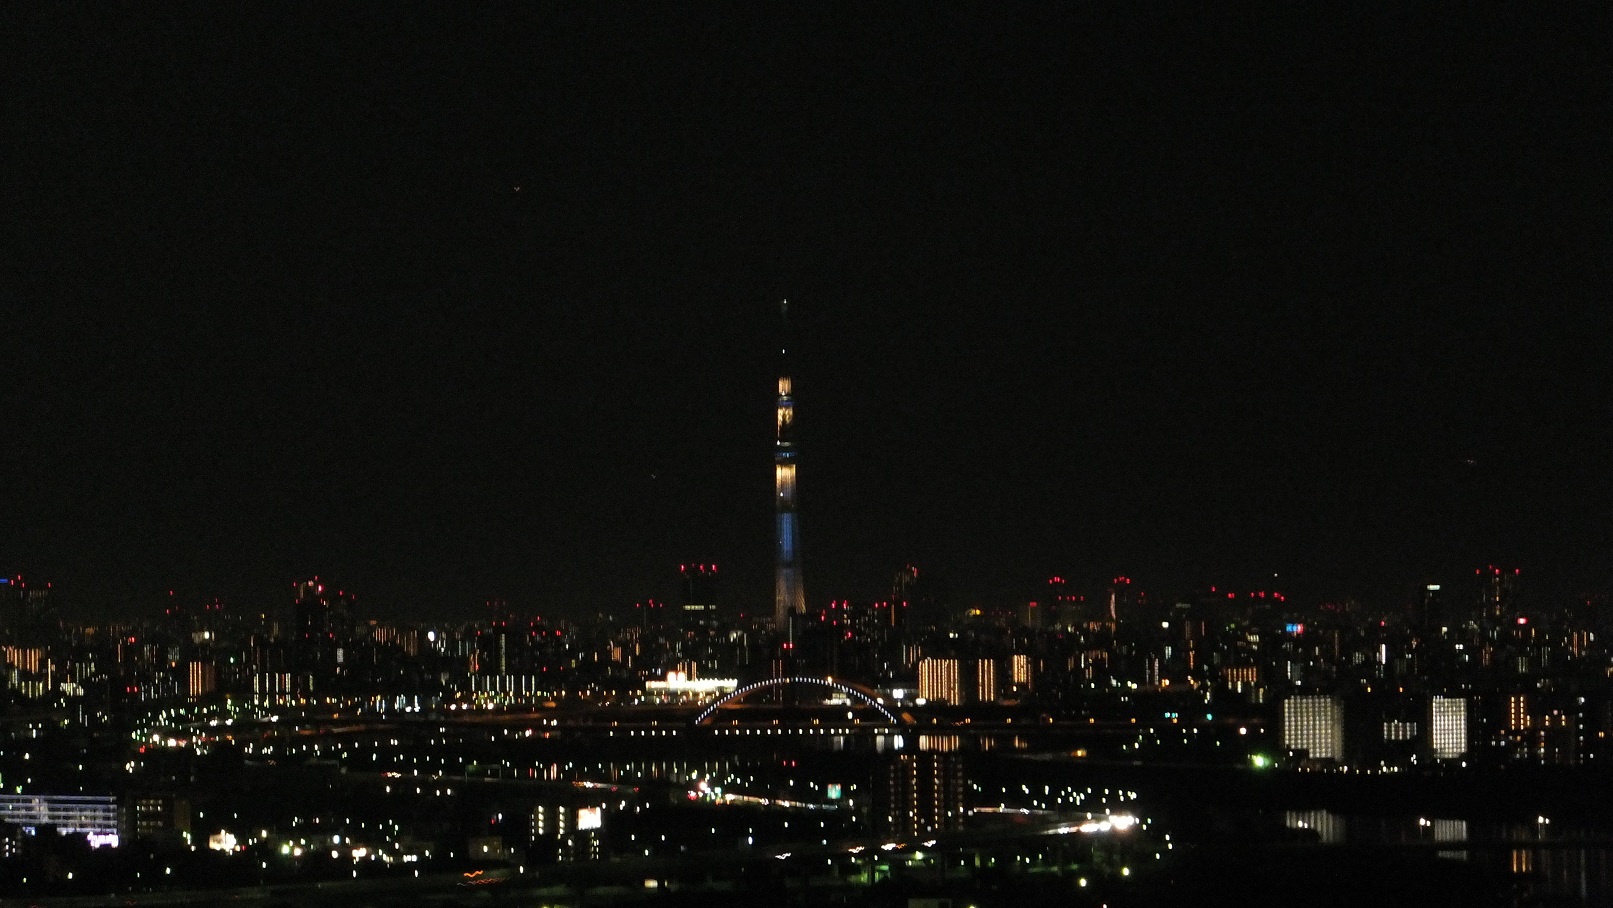 ワイド写真 東京スカイツリー夜景 Skytree Night View 写真の旅 世界 日本 無料壁紙 Free Photo Wallpaper Japan World